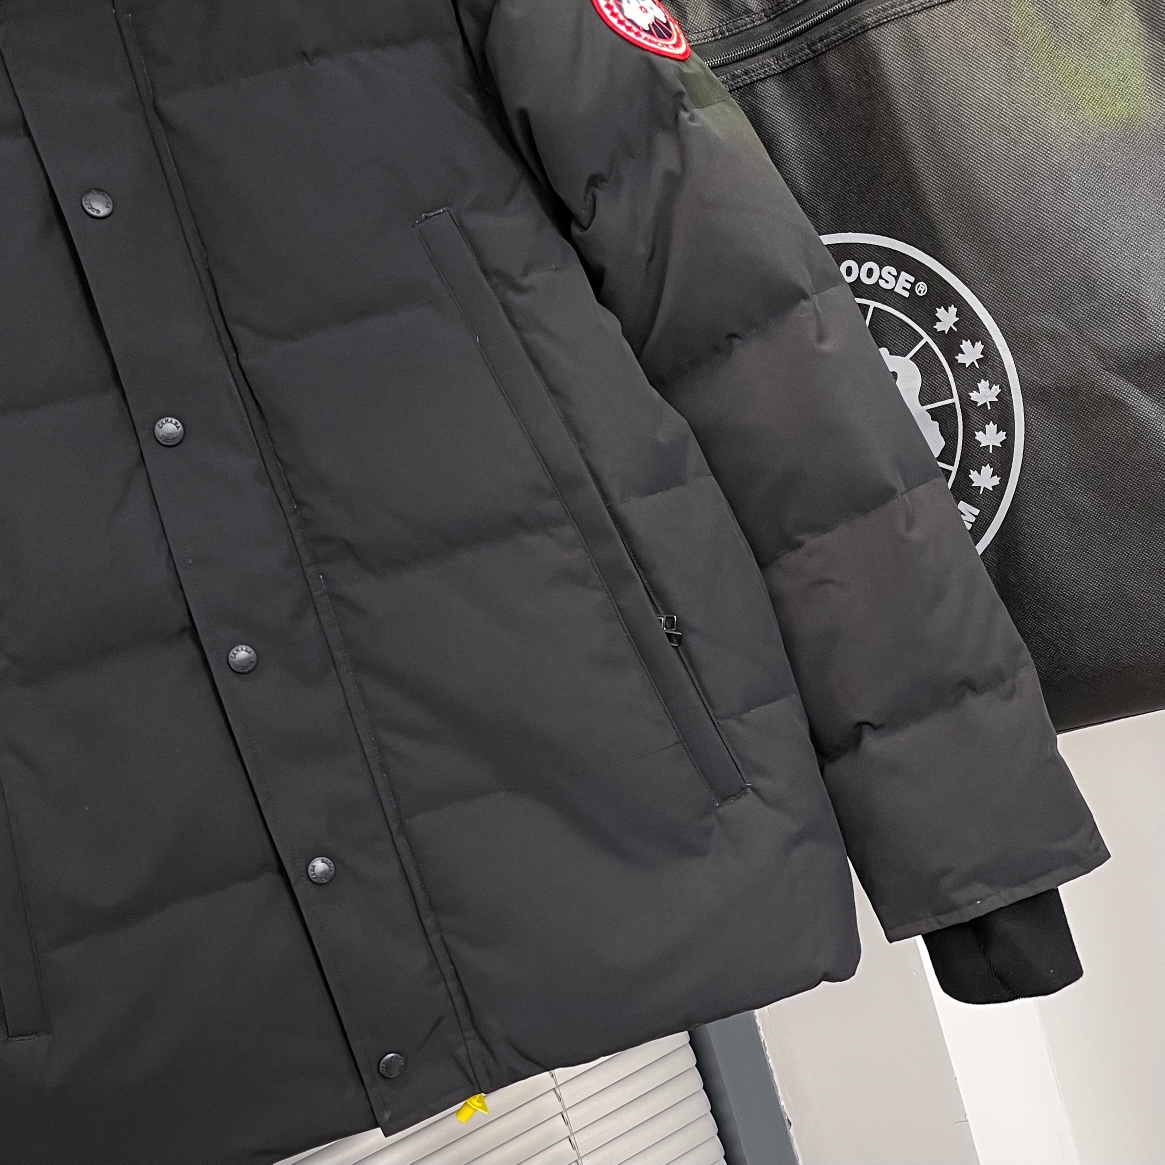 カナダグース軽量ダウンコート高級 ファッションダウンジャケット冬物人気ブランドフード付き_2